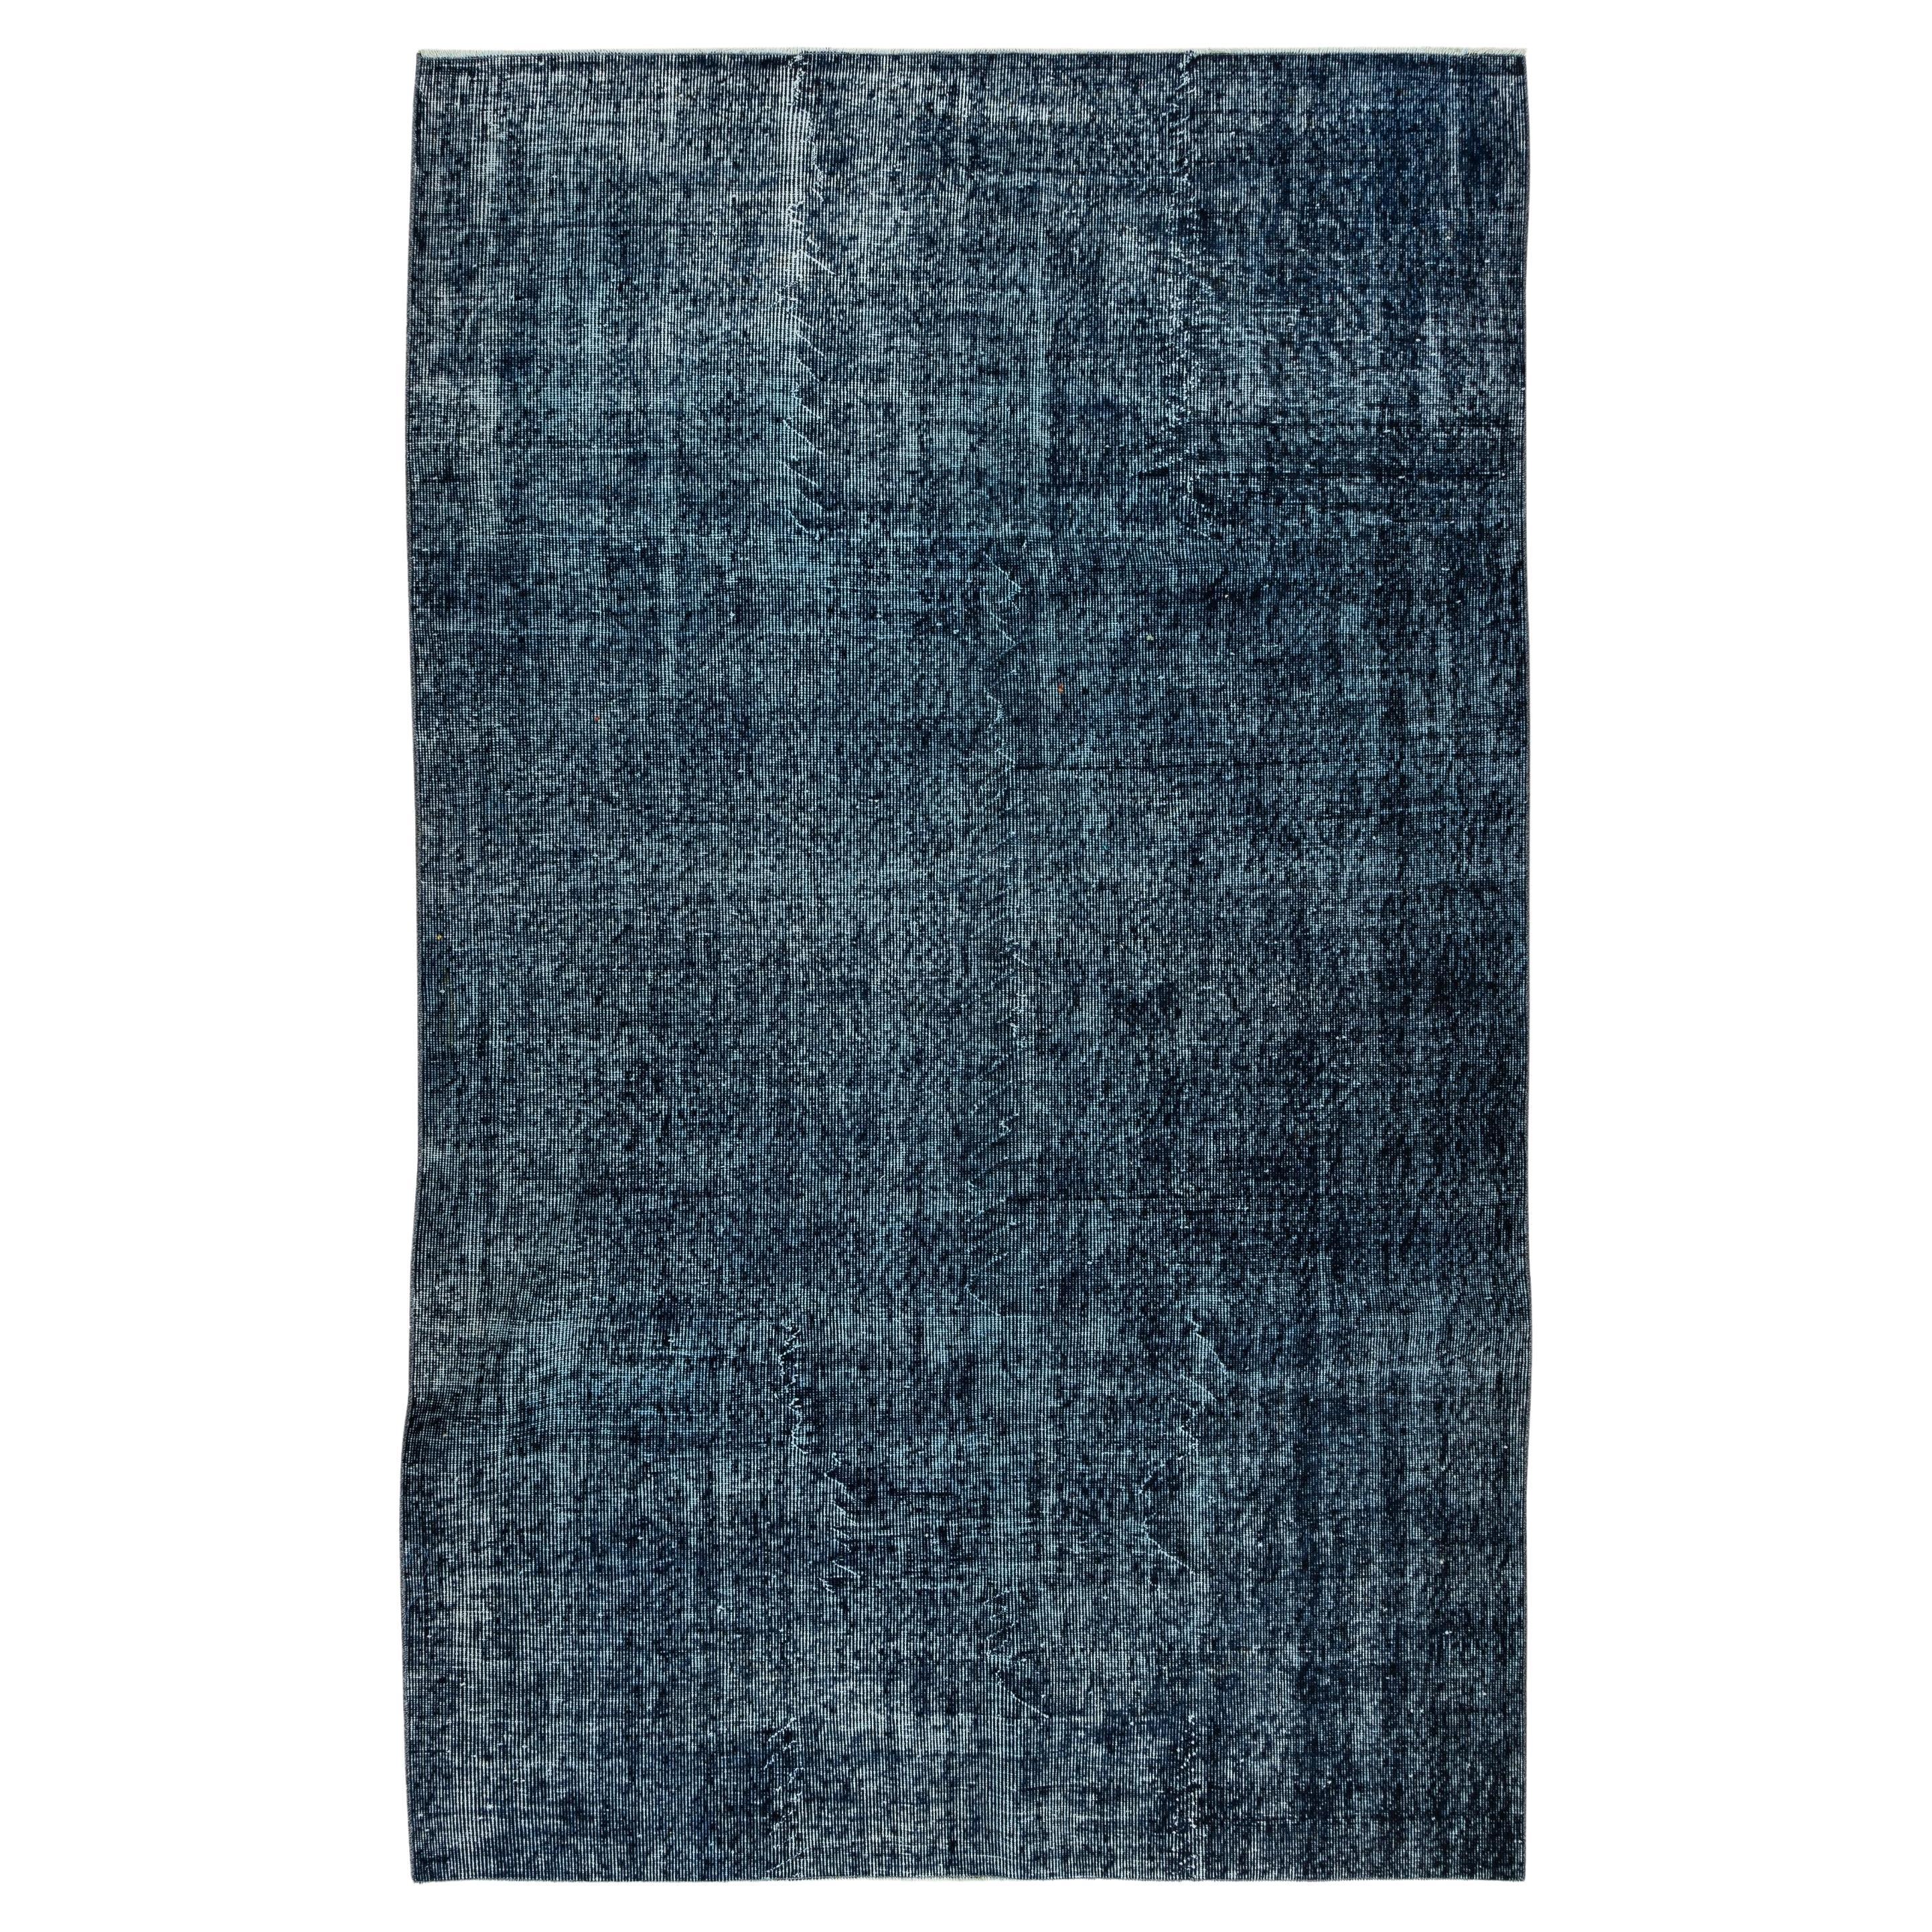 5.6x8.8 Ft Marineblauer Over-Dyed-Teppich, handgeknüpfter türkischer Wollteppich